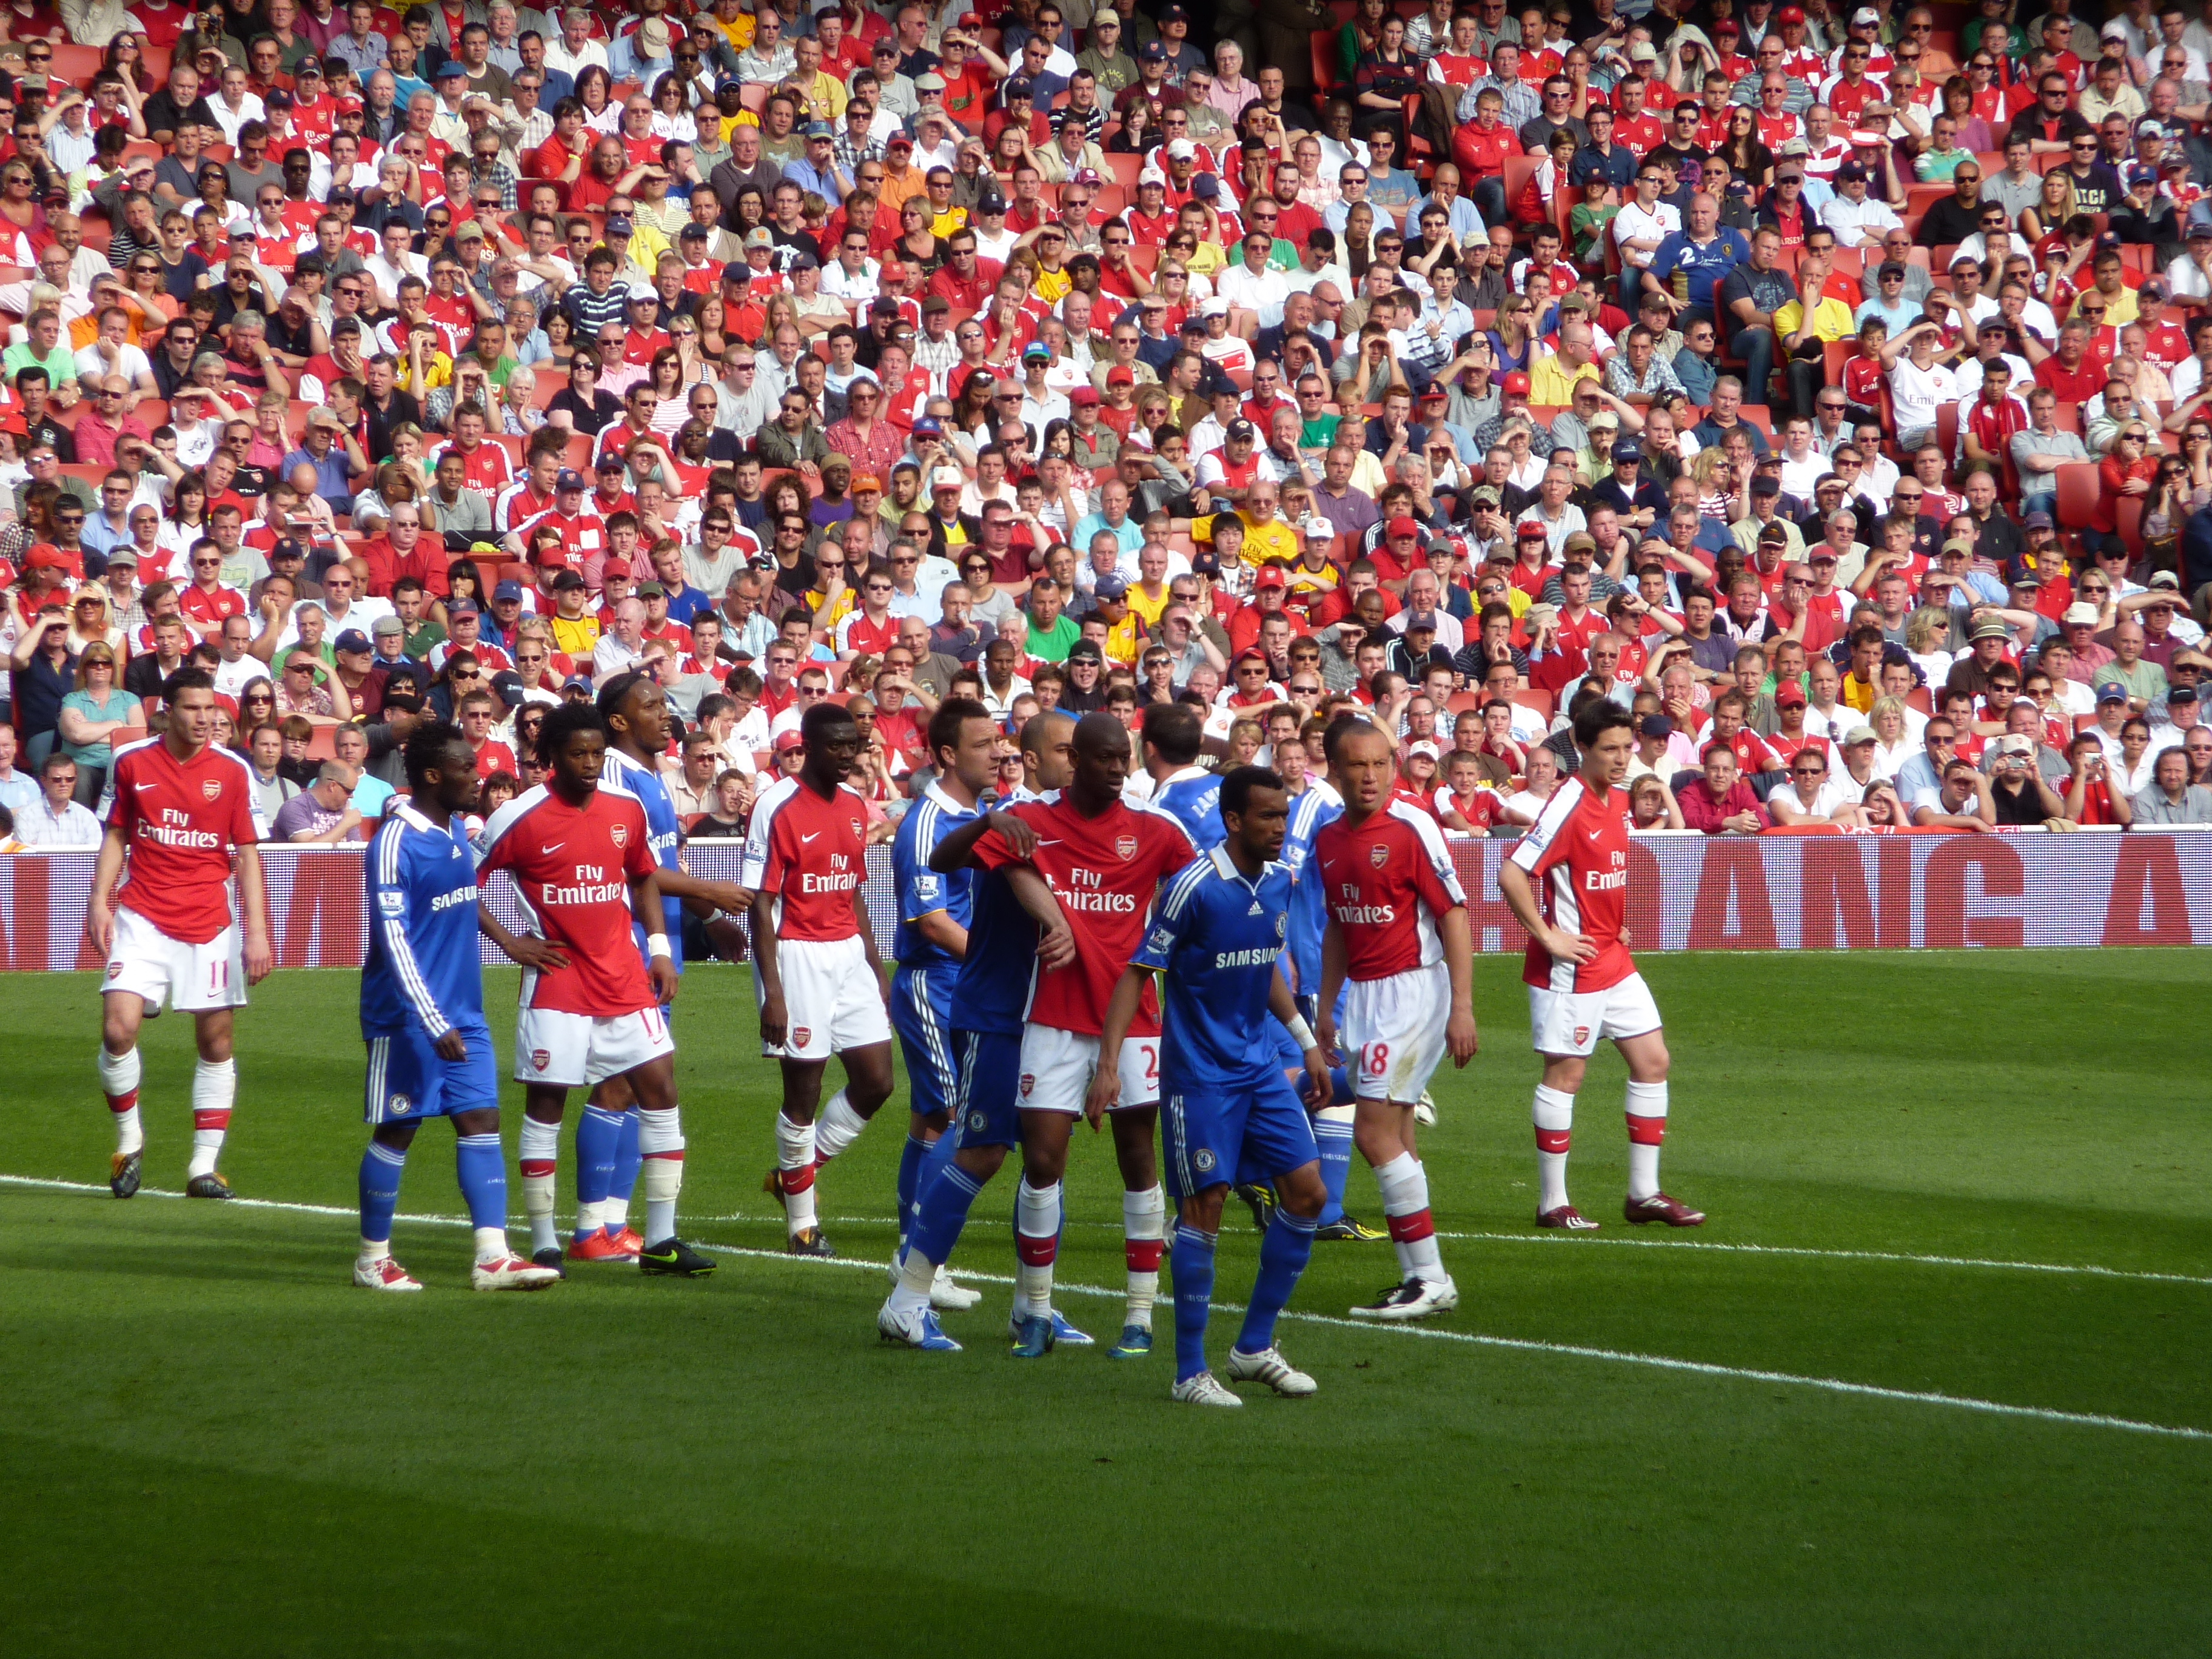 Cạnh tranh giữa Arsenal F.C. và Chelsea F.C. – Wikipedia tiếng Việt